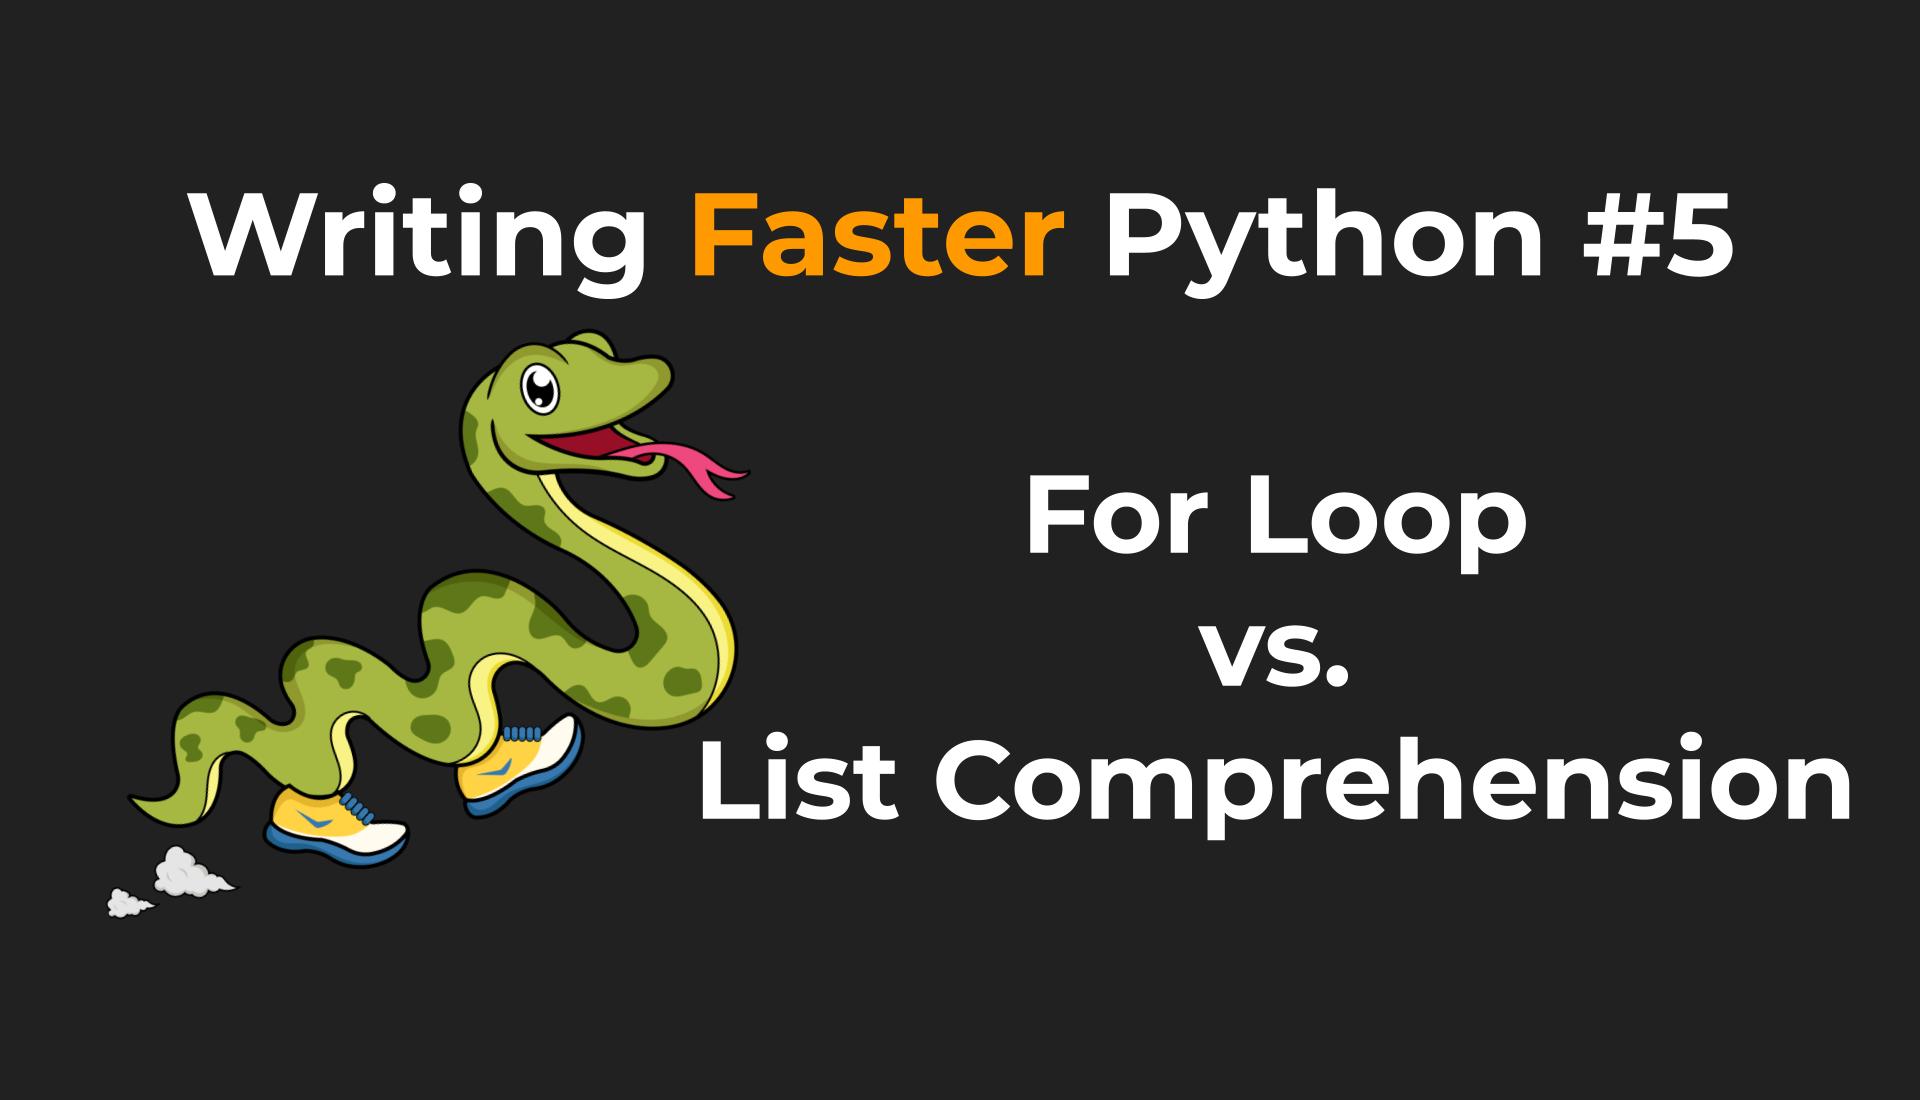 For Loop vs. List Comprehension